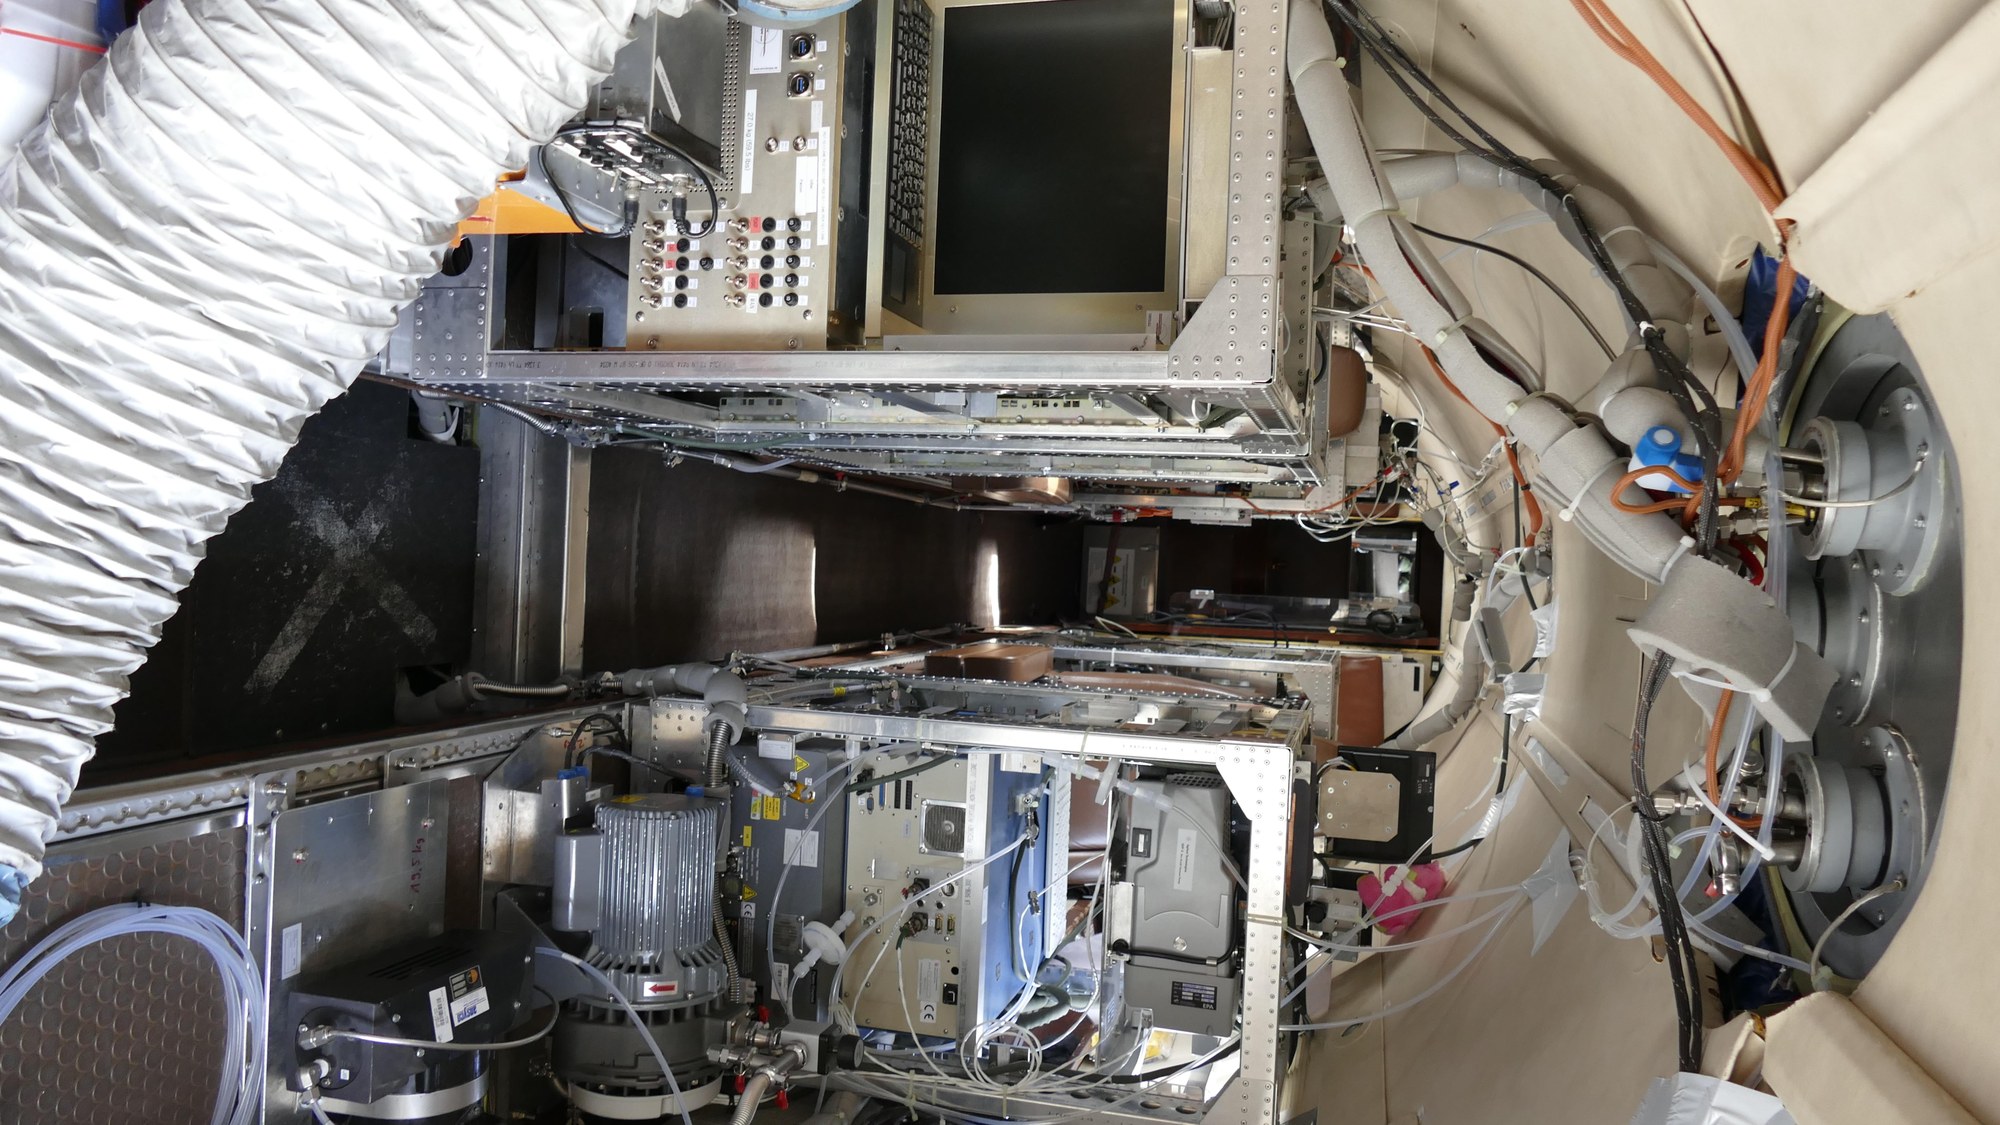 Missionsinstrumentierung in der Kabine des Forschungsflugzeug Falcon 20E-5 (D-CMET)